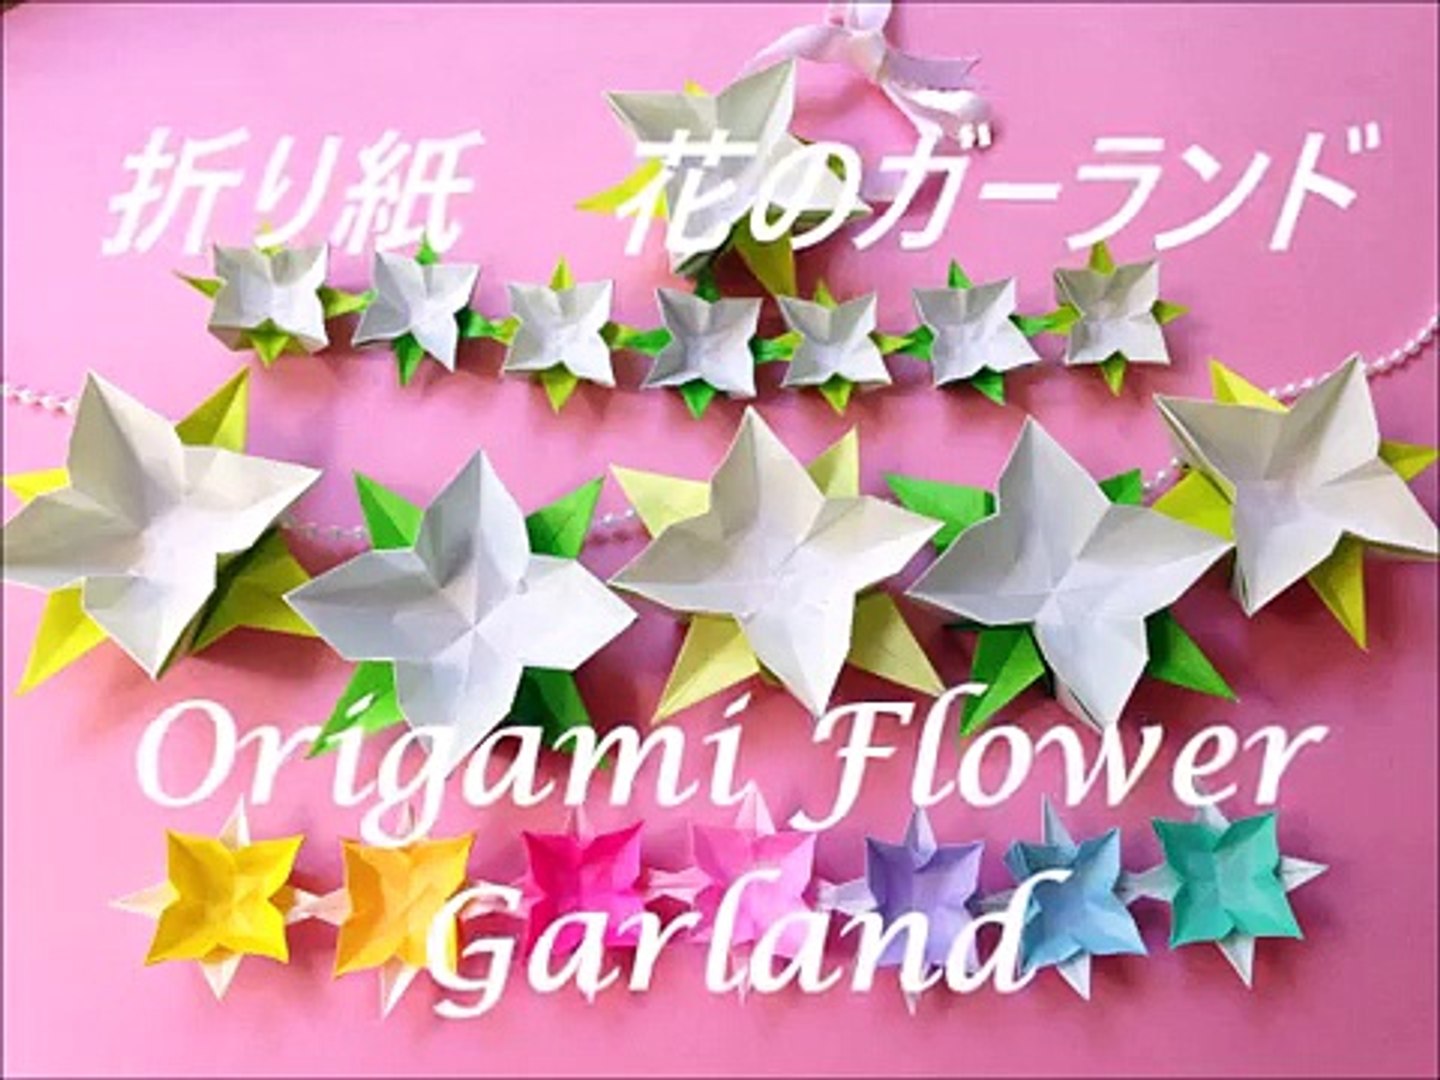 折り紙 花のガーランドの簡単な作り方 Niceno1 Origami Flower Garland Tutorial Jjz3u6l4egm Video Dailymotion